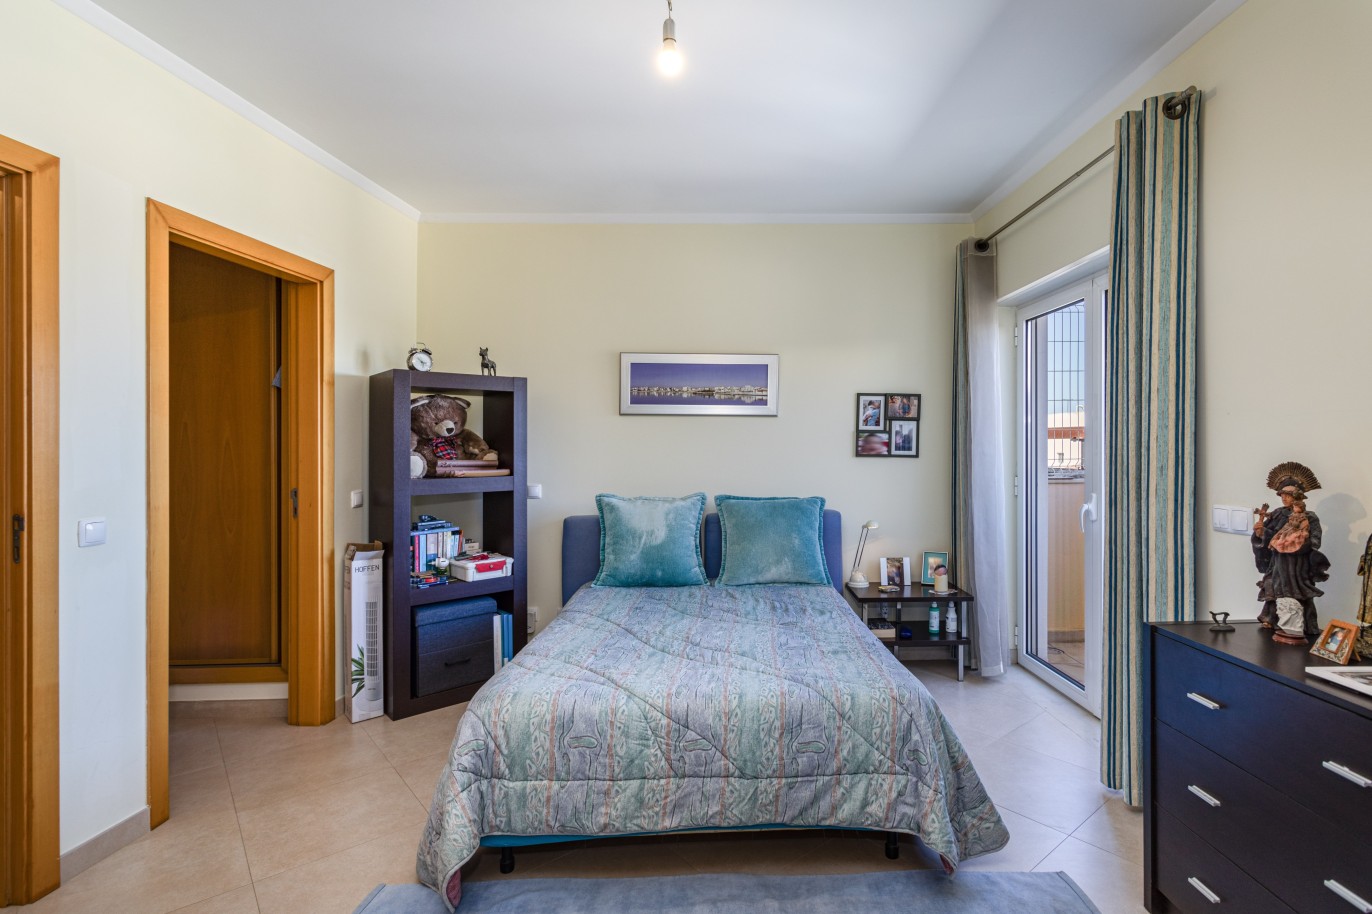 Villa triplex de 3 dormitorios con local comercial, en venta en Portimão_233877